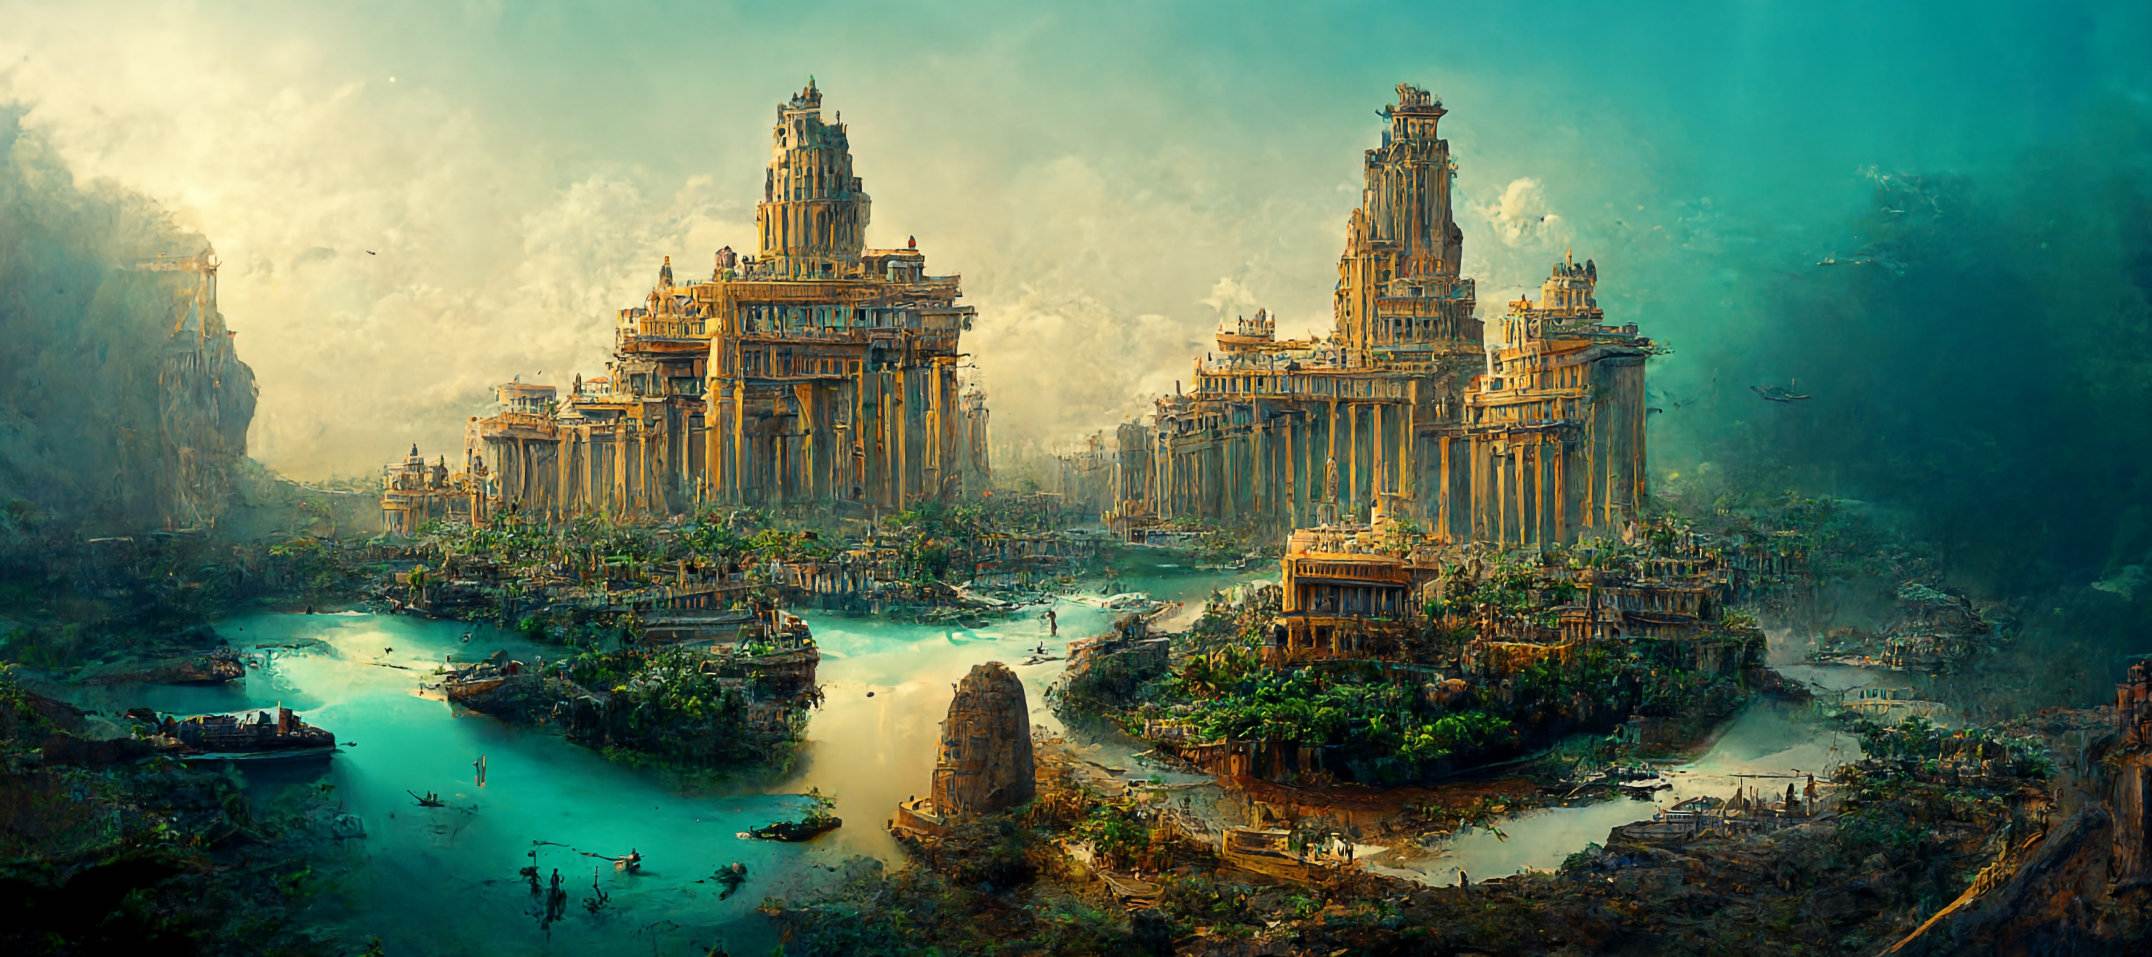 ເມືອງ Pavlopetri ຫຼື Atlantis ທີ່ຈົມຢູ່ໃຕ້ດິນ: ເມືອງເກົ່າ 5,000 ປີຖືກຄົ້ນພົບໃນປະເທດເກຣັກ 2